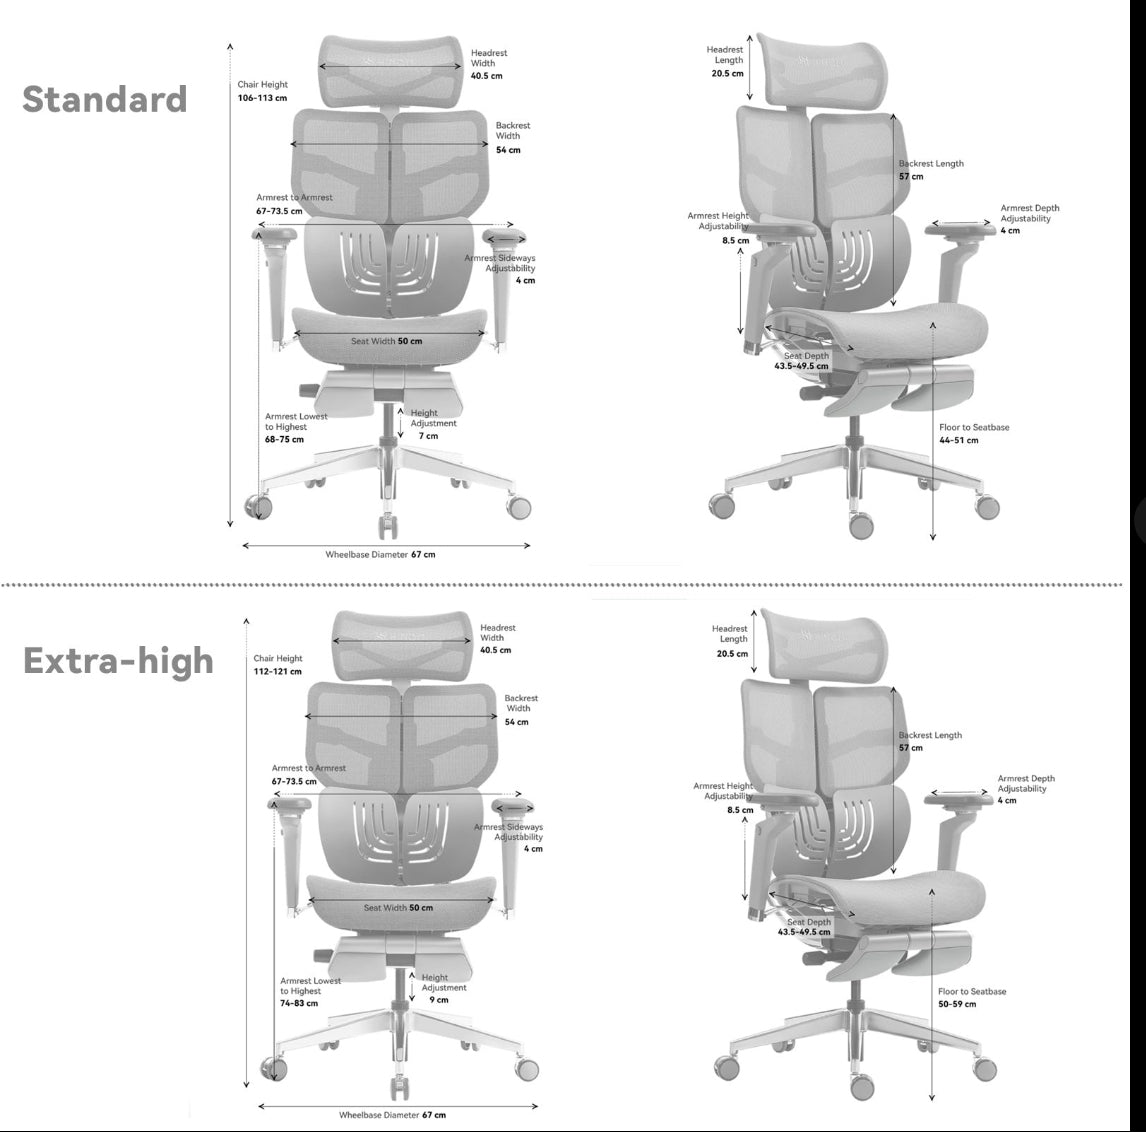 HINOMI X1 Ergonomic Office Chair